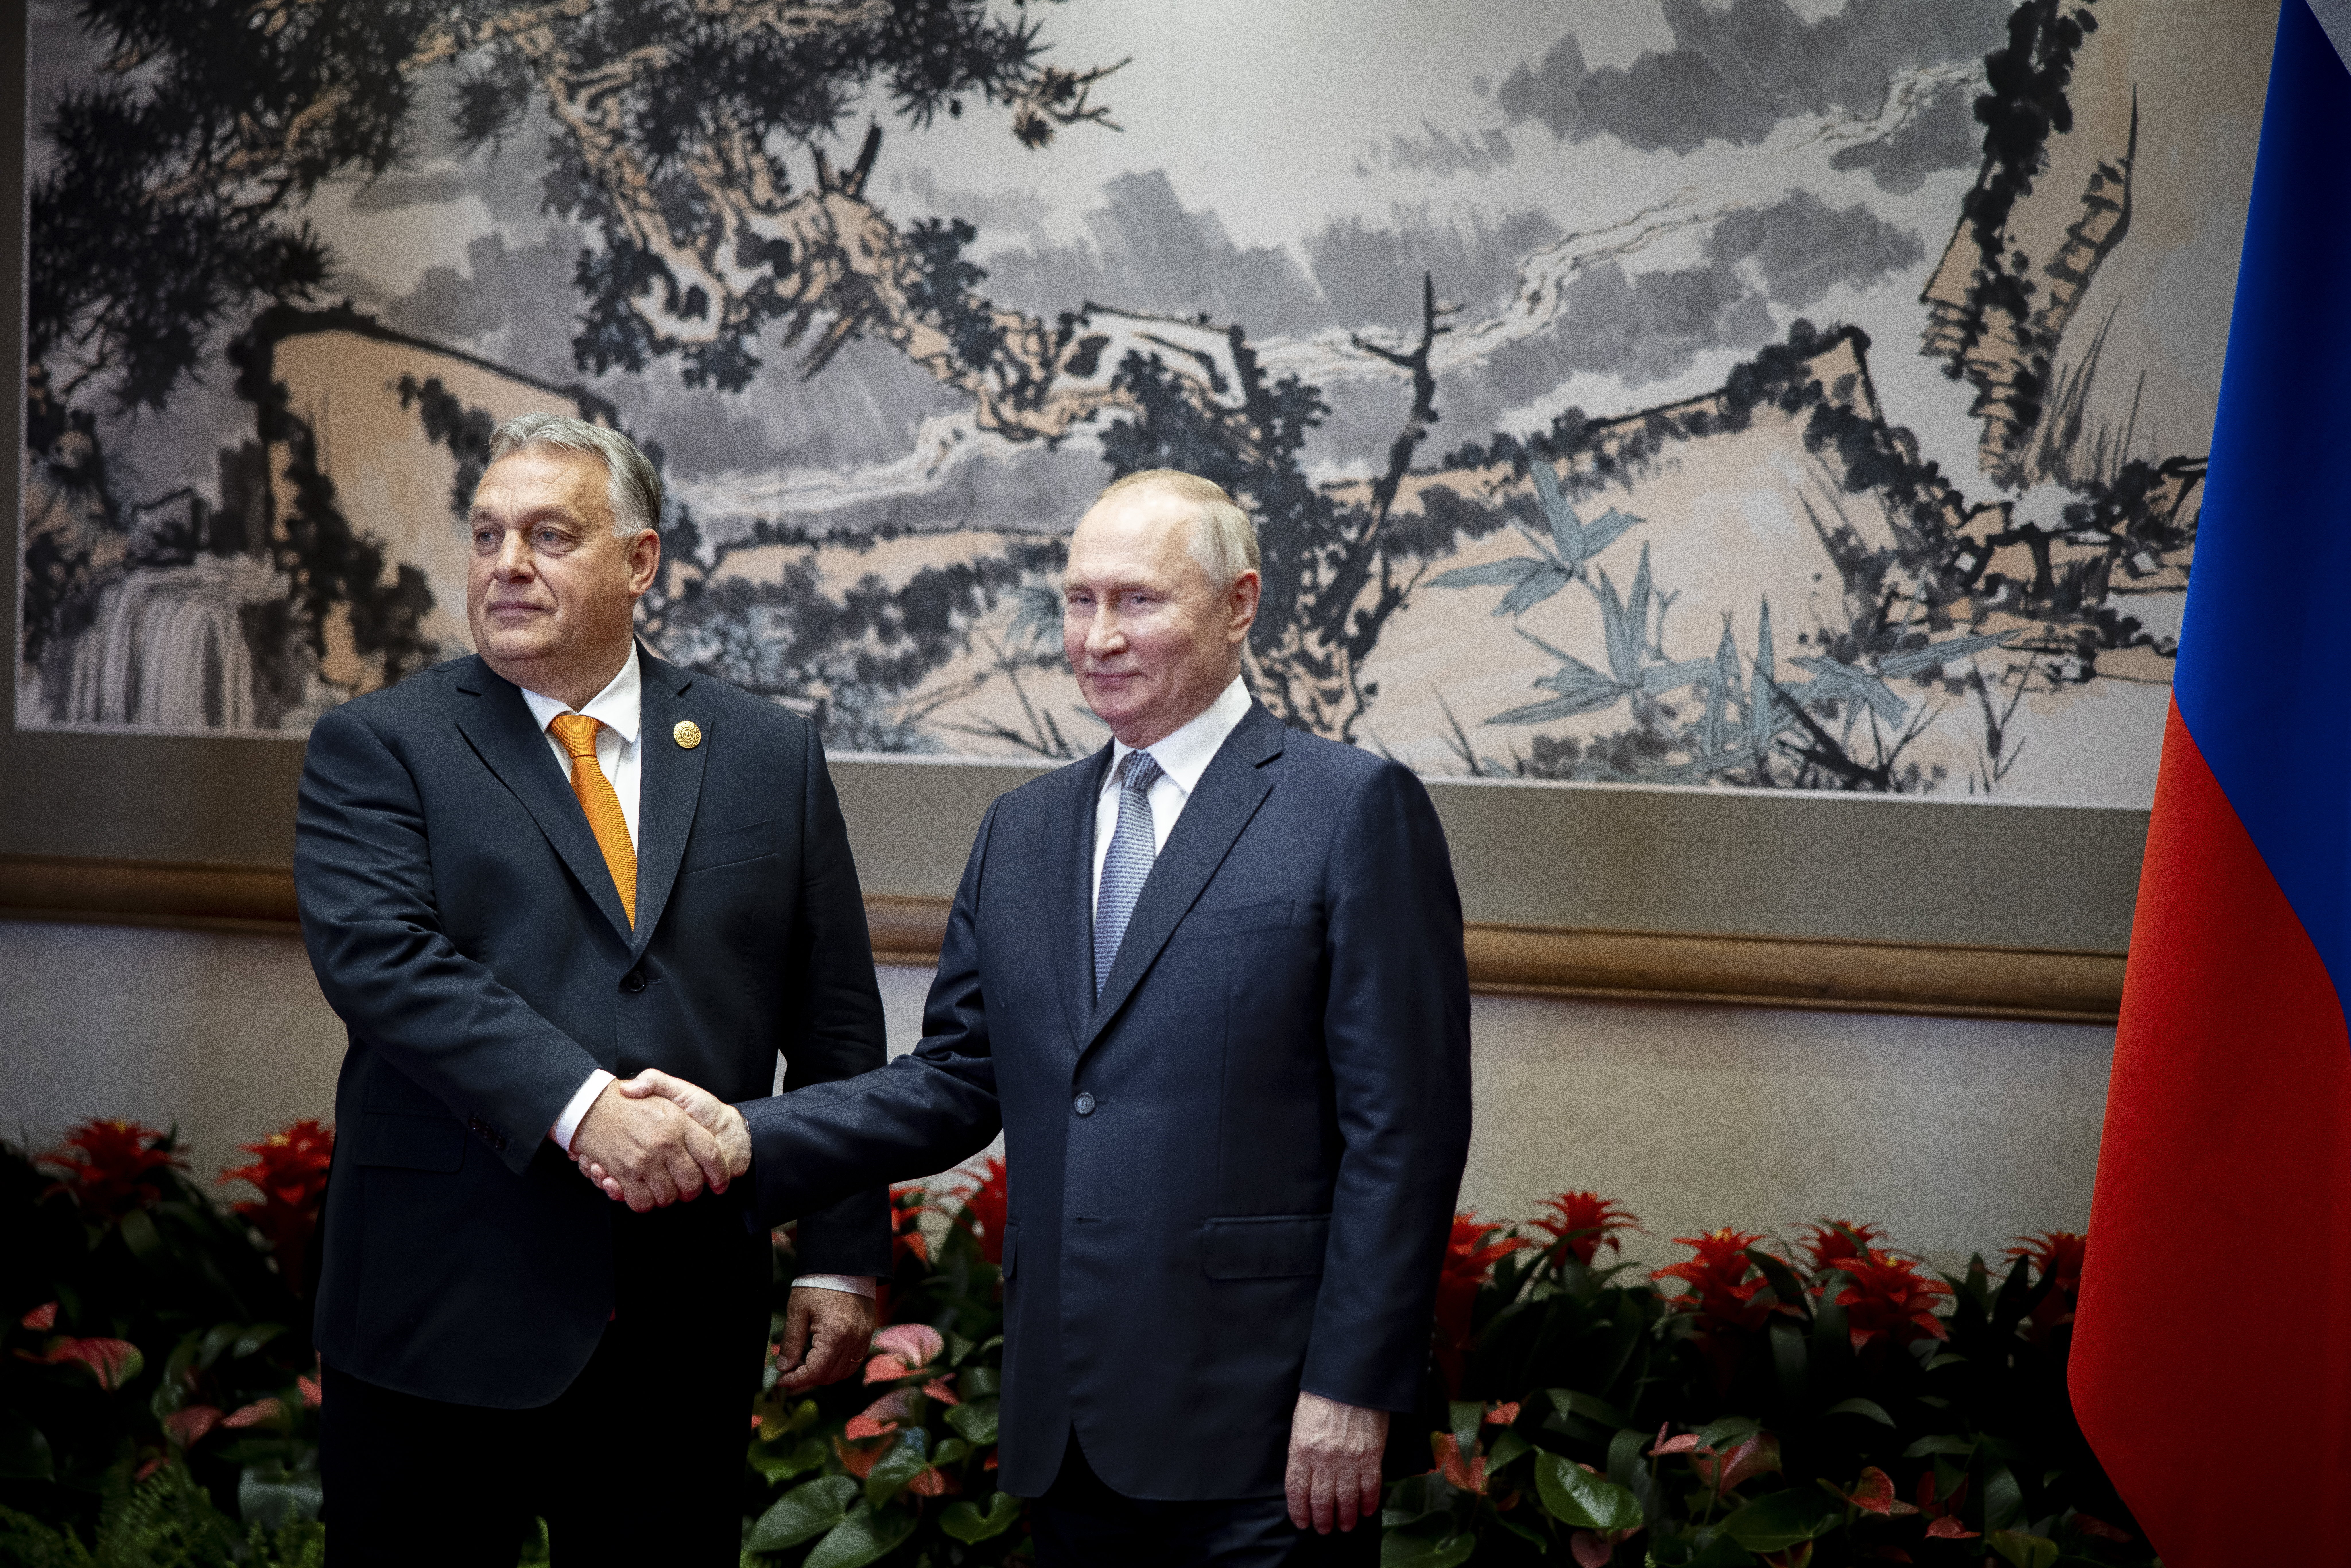 Putyin elárulta, miről beszélgetett Orbánnal, és hogy felajánlotta-e Kárpátalját Magyarországnak